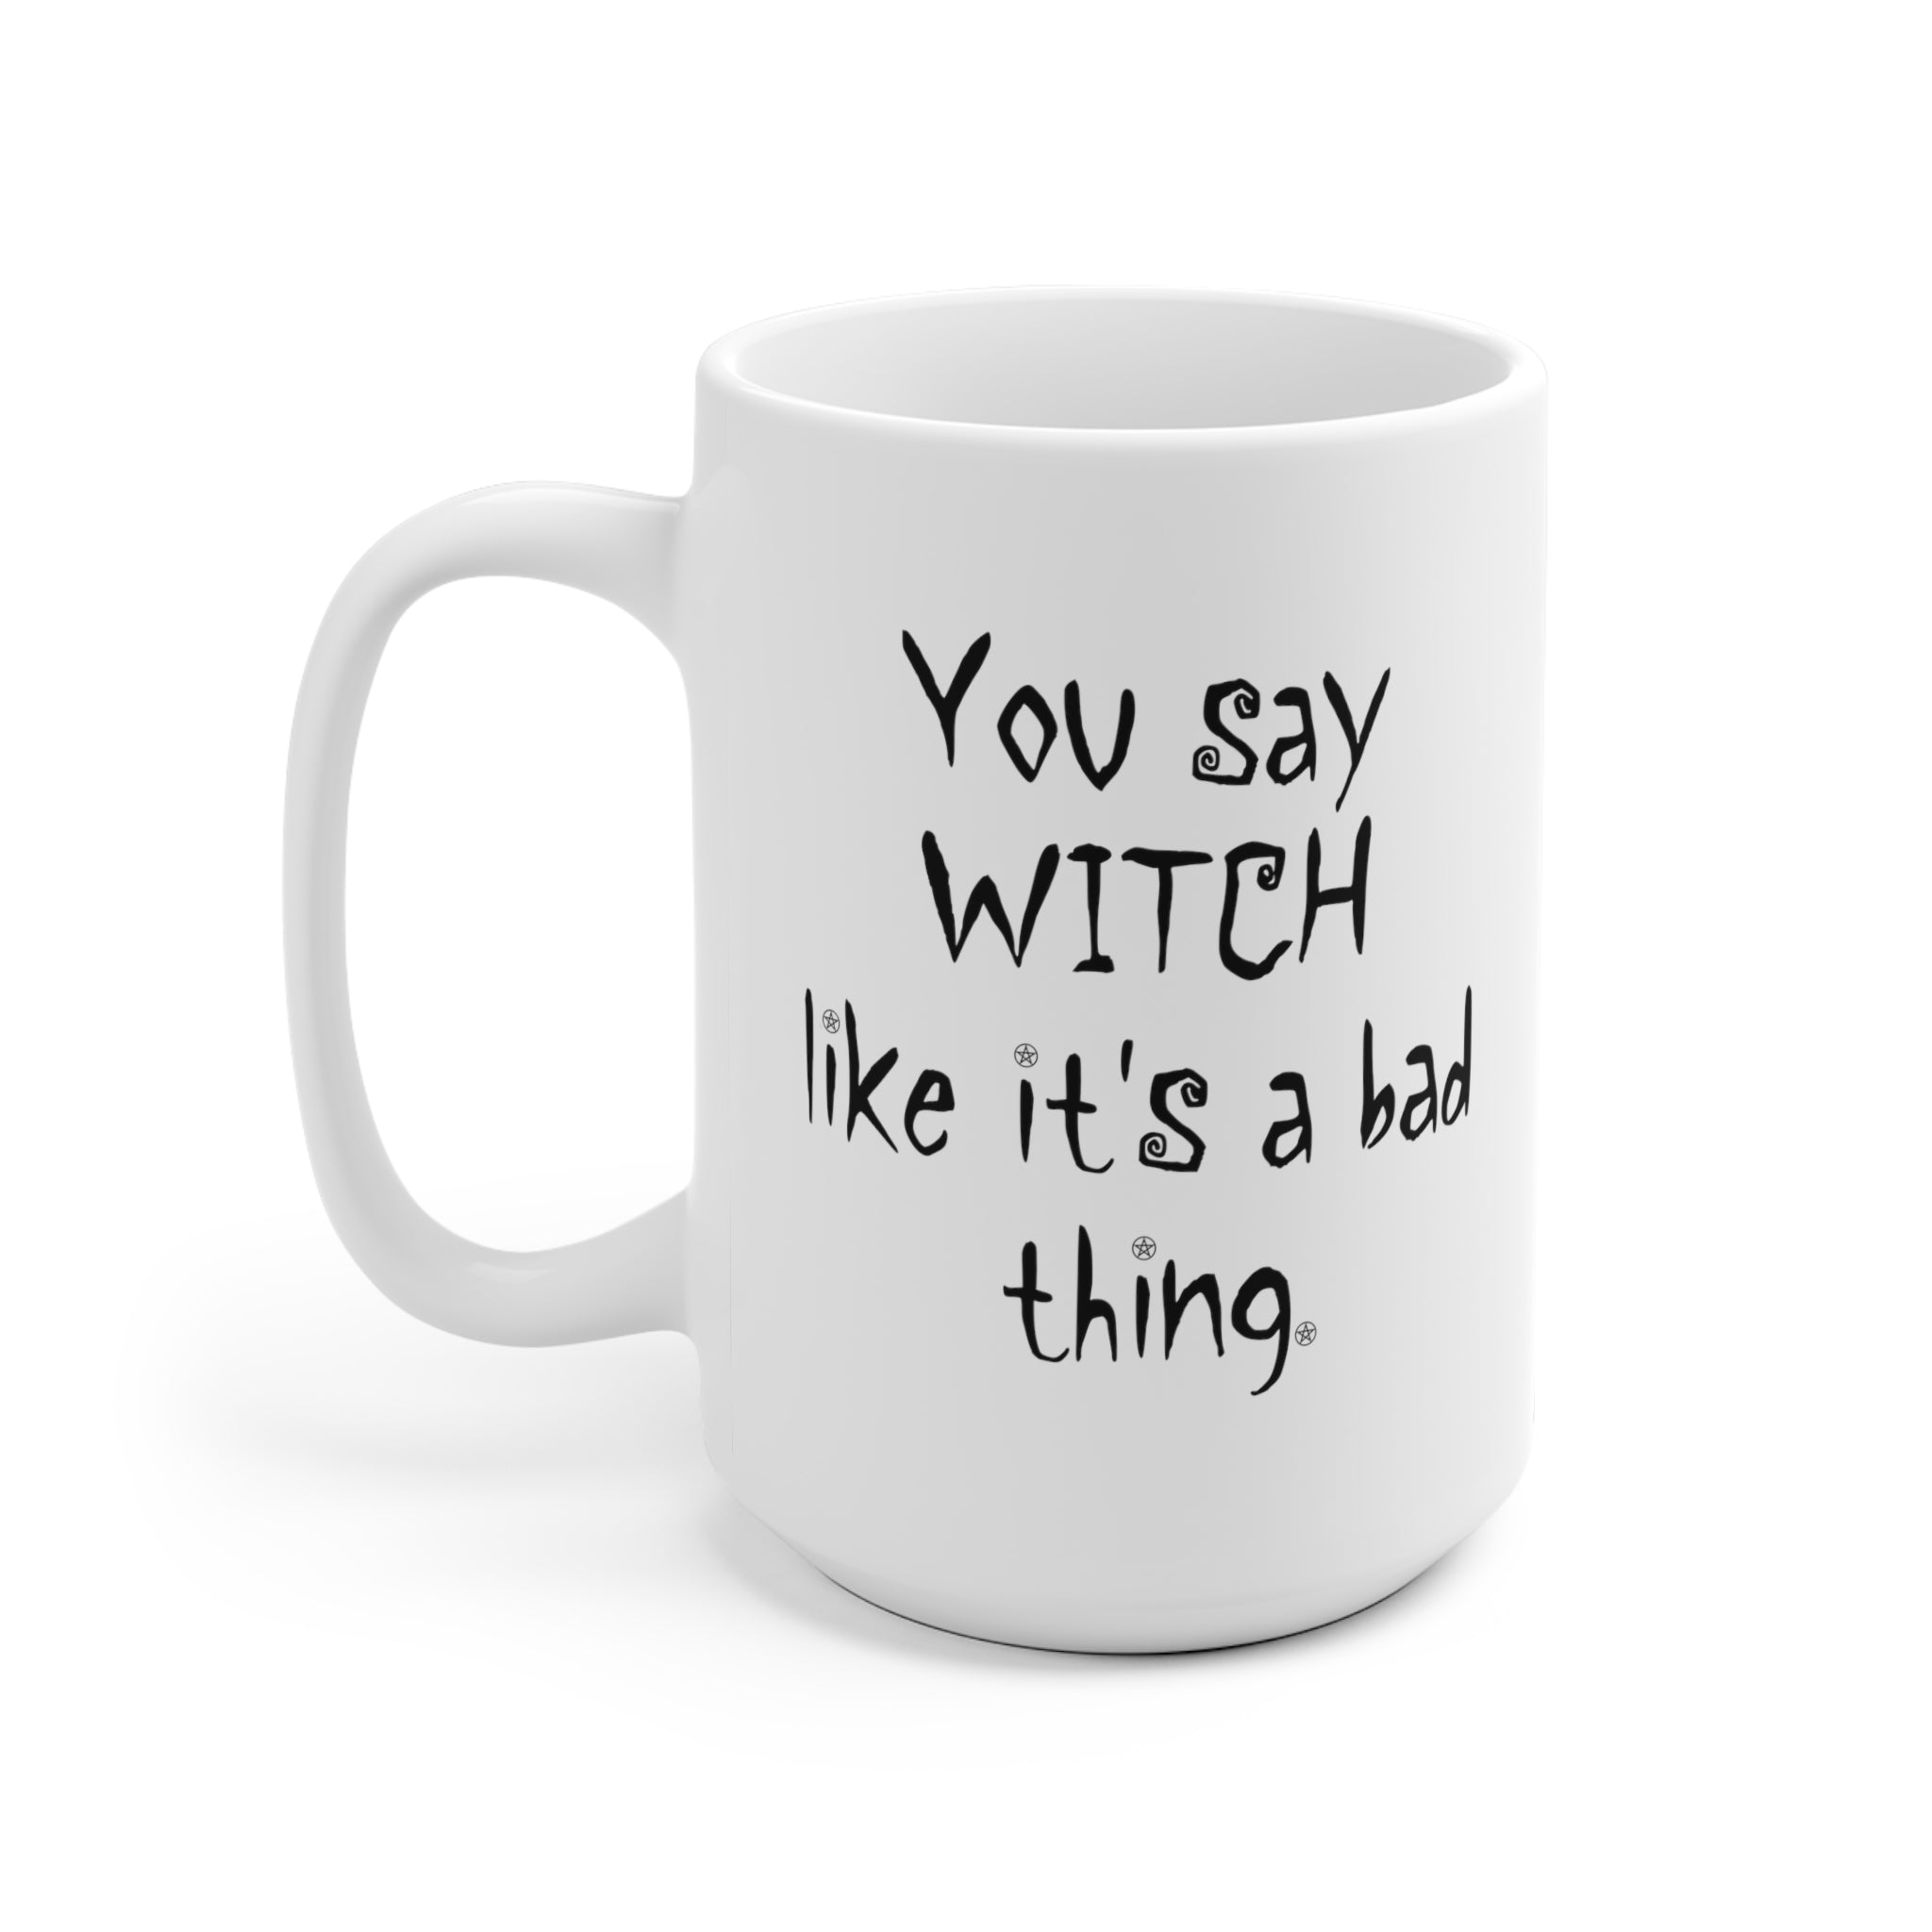 White Ceramic Mug - You Say Witch